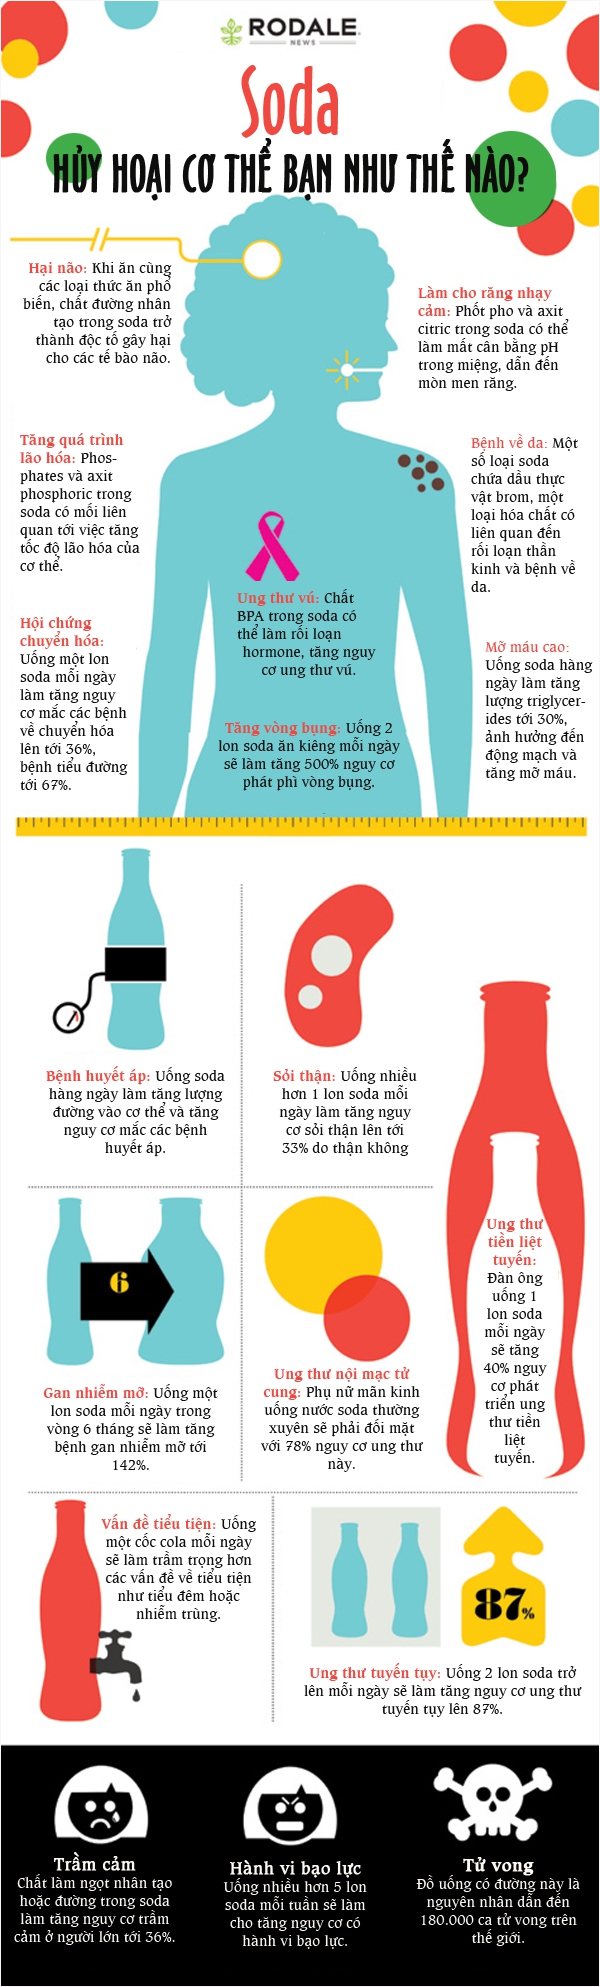 Những ảnh hưởng trầm trọng tới sức khỏe nếu uống nhiều nước soda 1